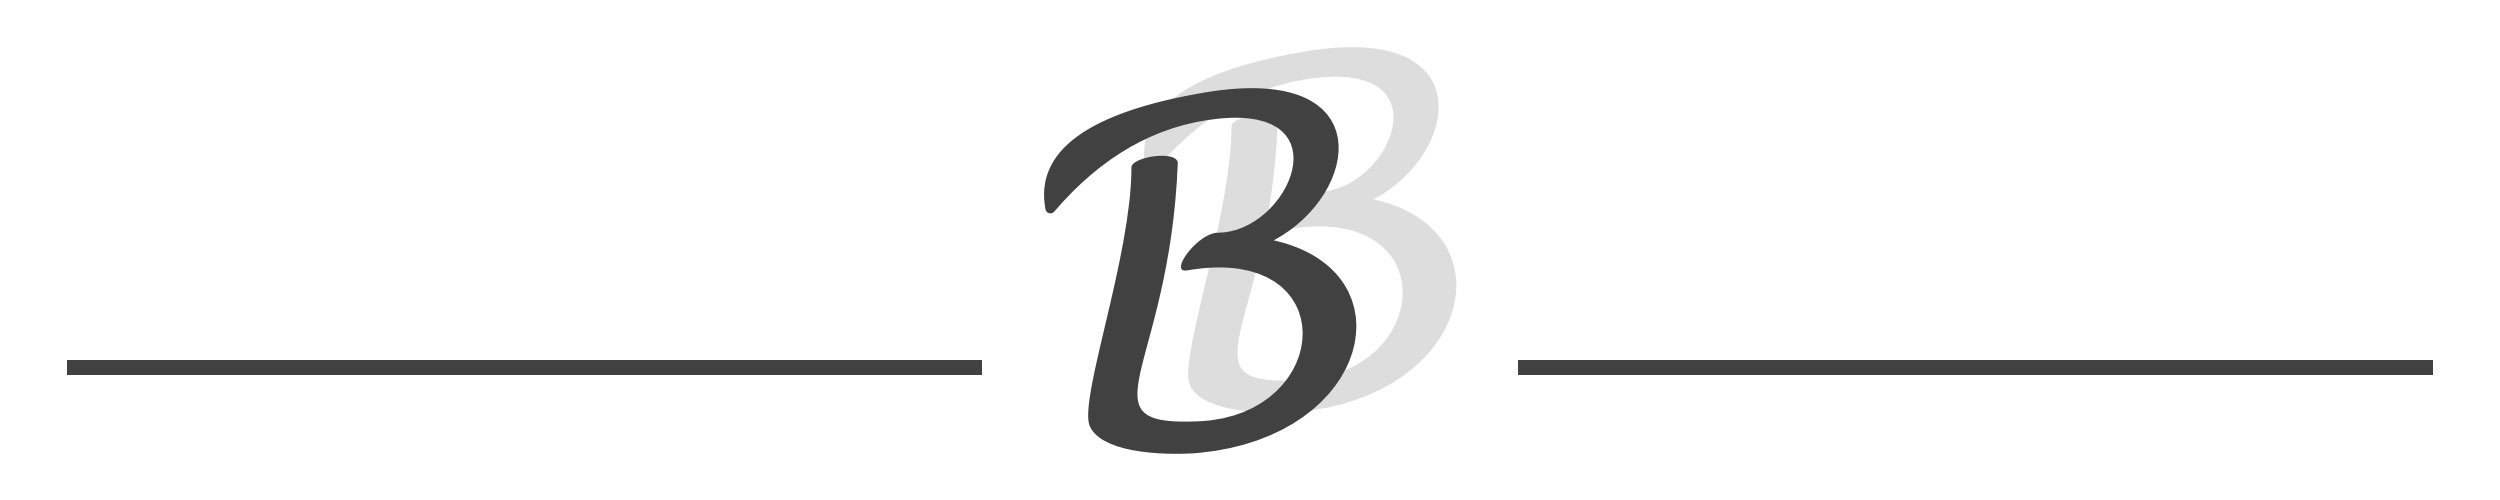 Brillen Bauer Logo